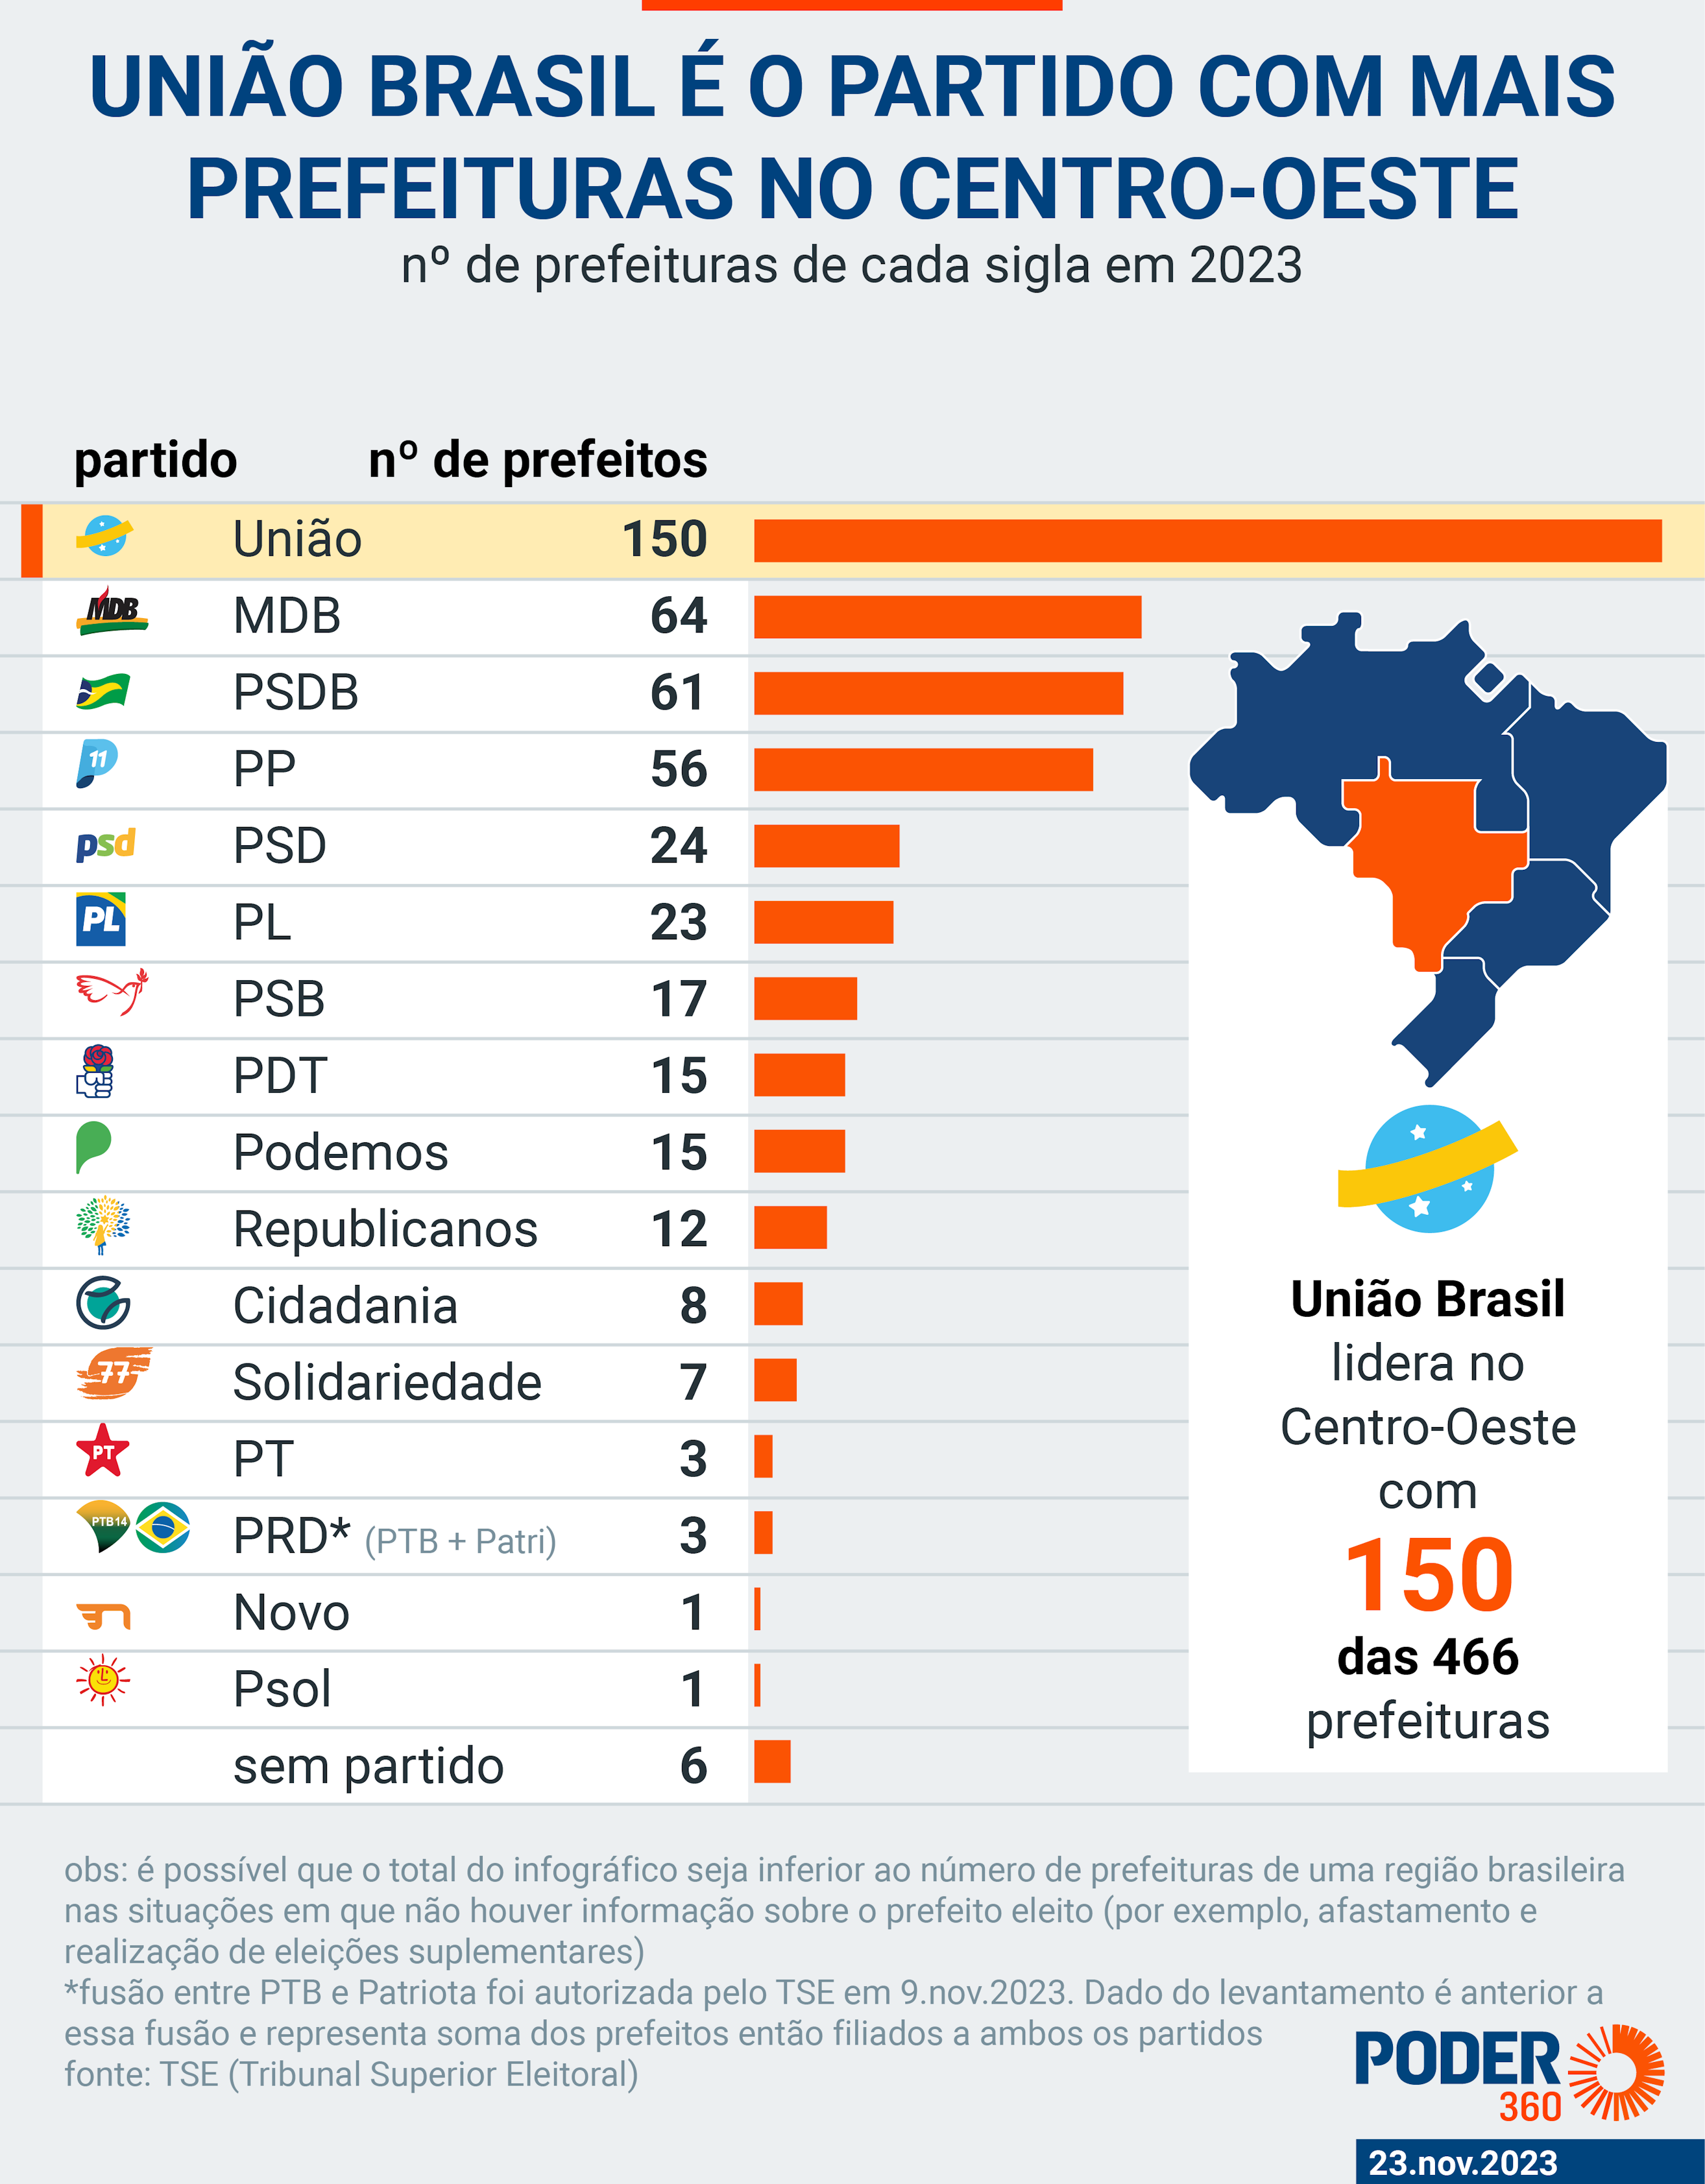 psd de kassab vira partido com maior nº de prefeitos no brasil